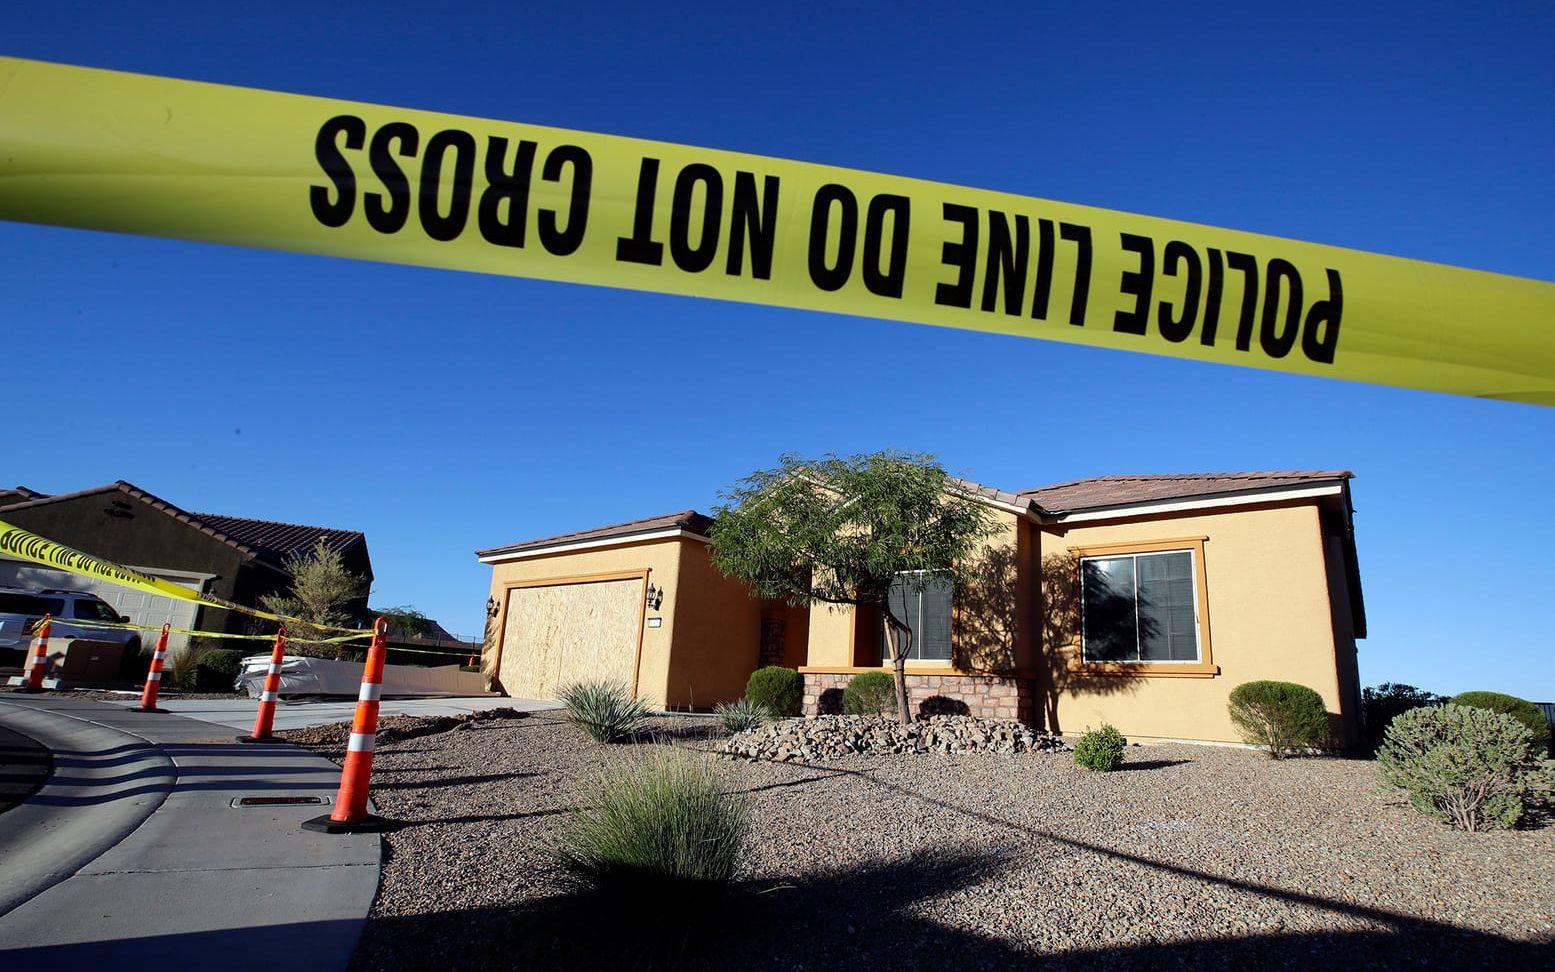 Den misstänkte massmördarens hem i Misquite, där polisen fann en vapengömma. FOTO: AP
